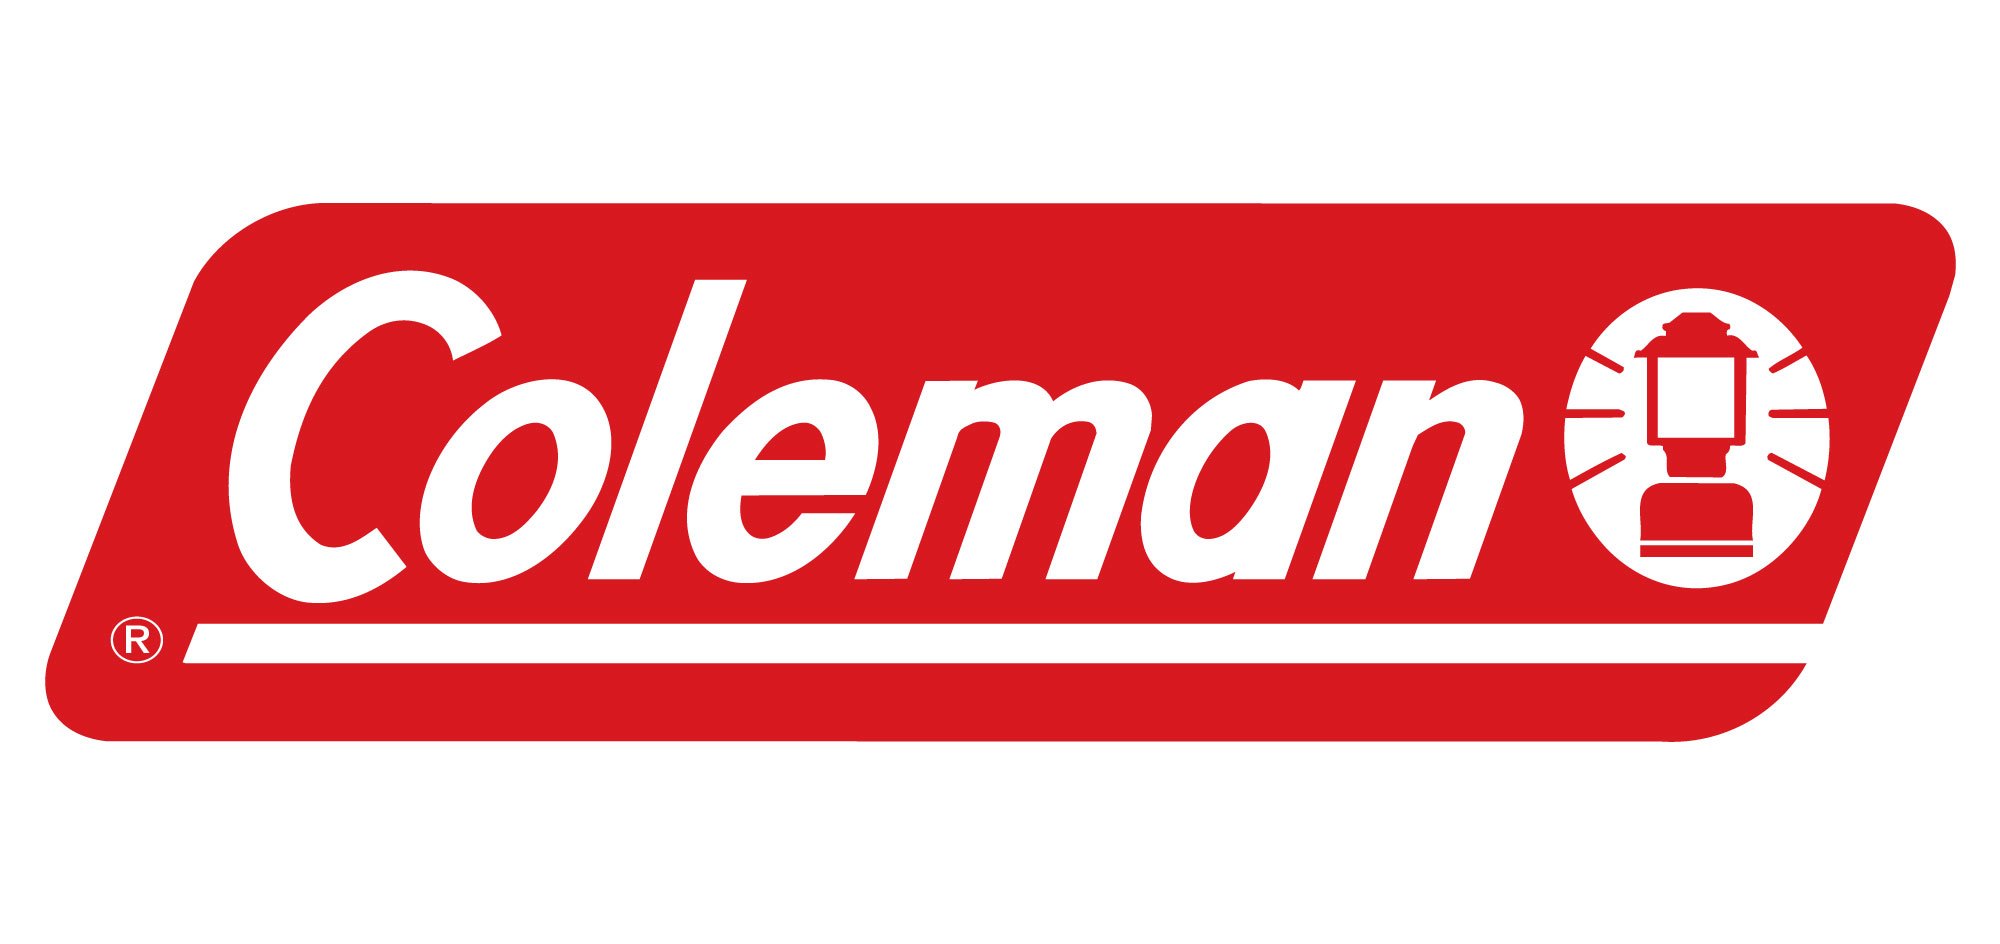 Coleman Ridgeline 4 Plus - Tienda de campaña 4 personas, Comprar online